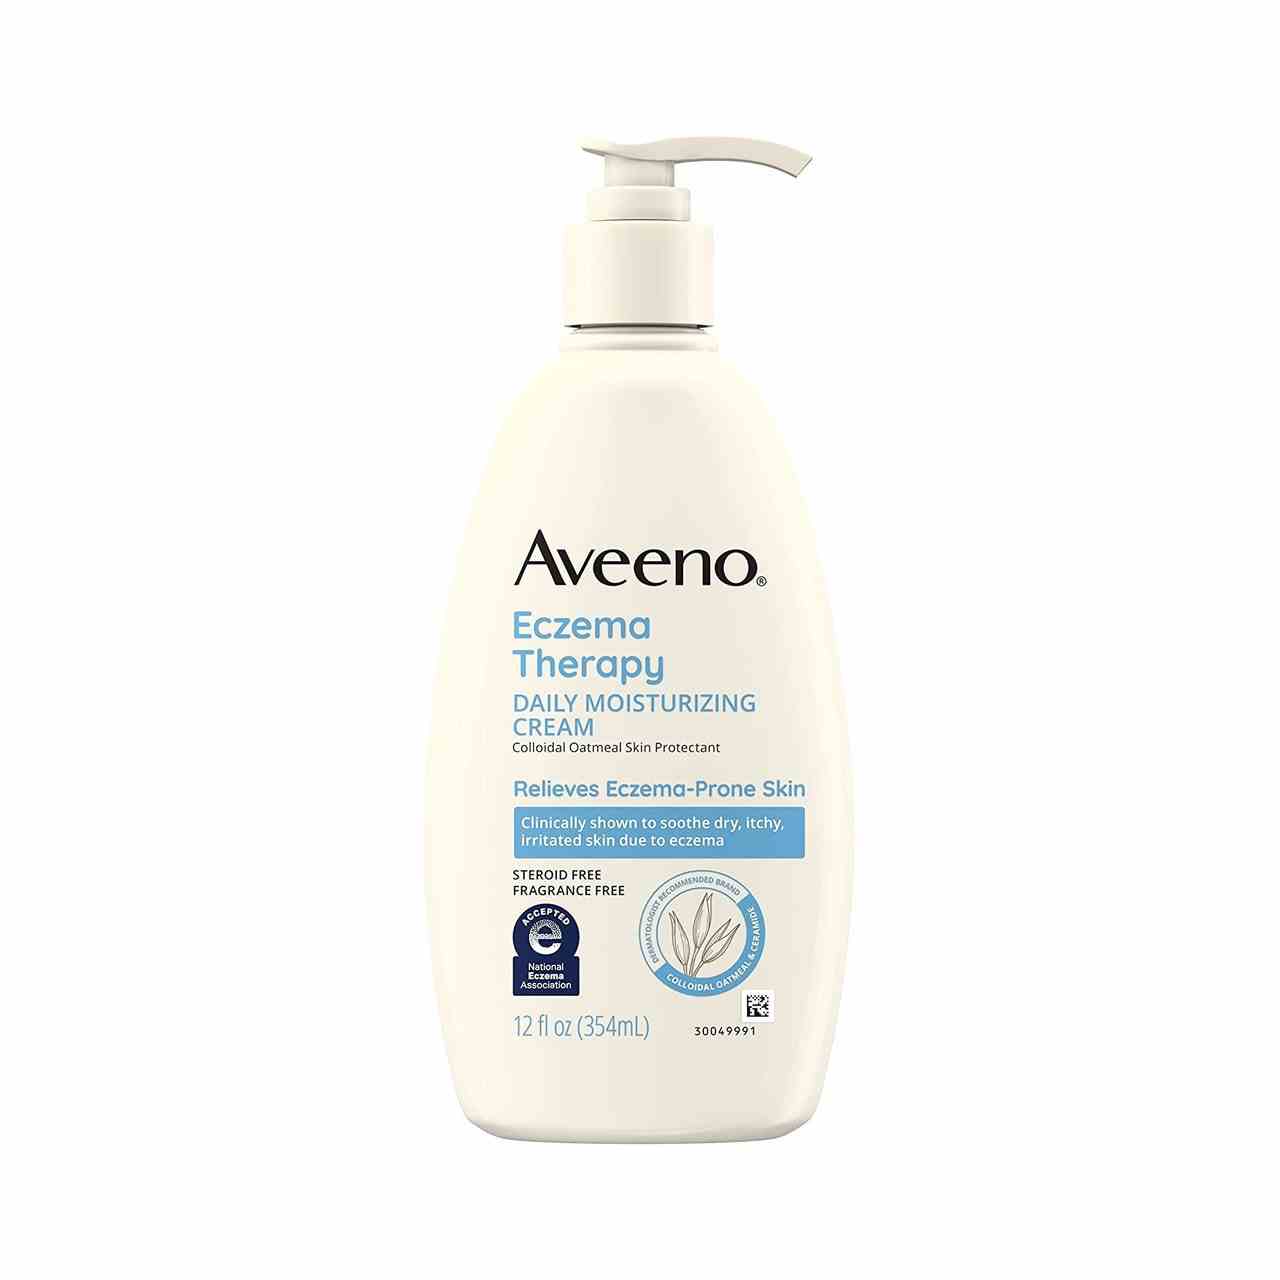 Aveeno Eczema Therapy Daily Moisturizing Cream beige Flasche mit Pumpe auf weißem Hintergrund